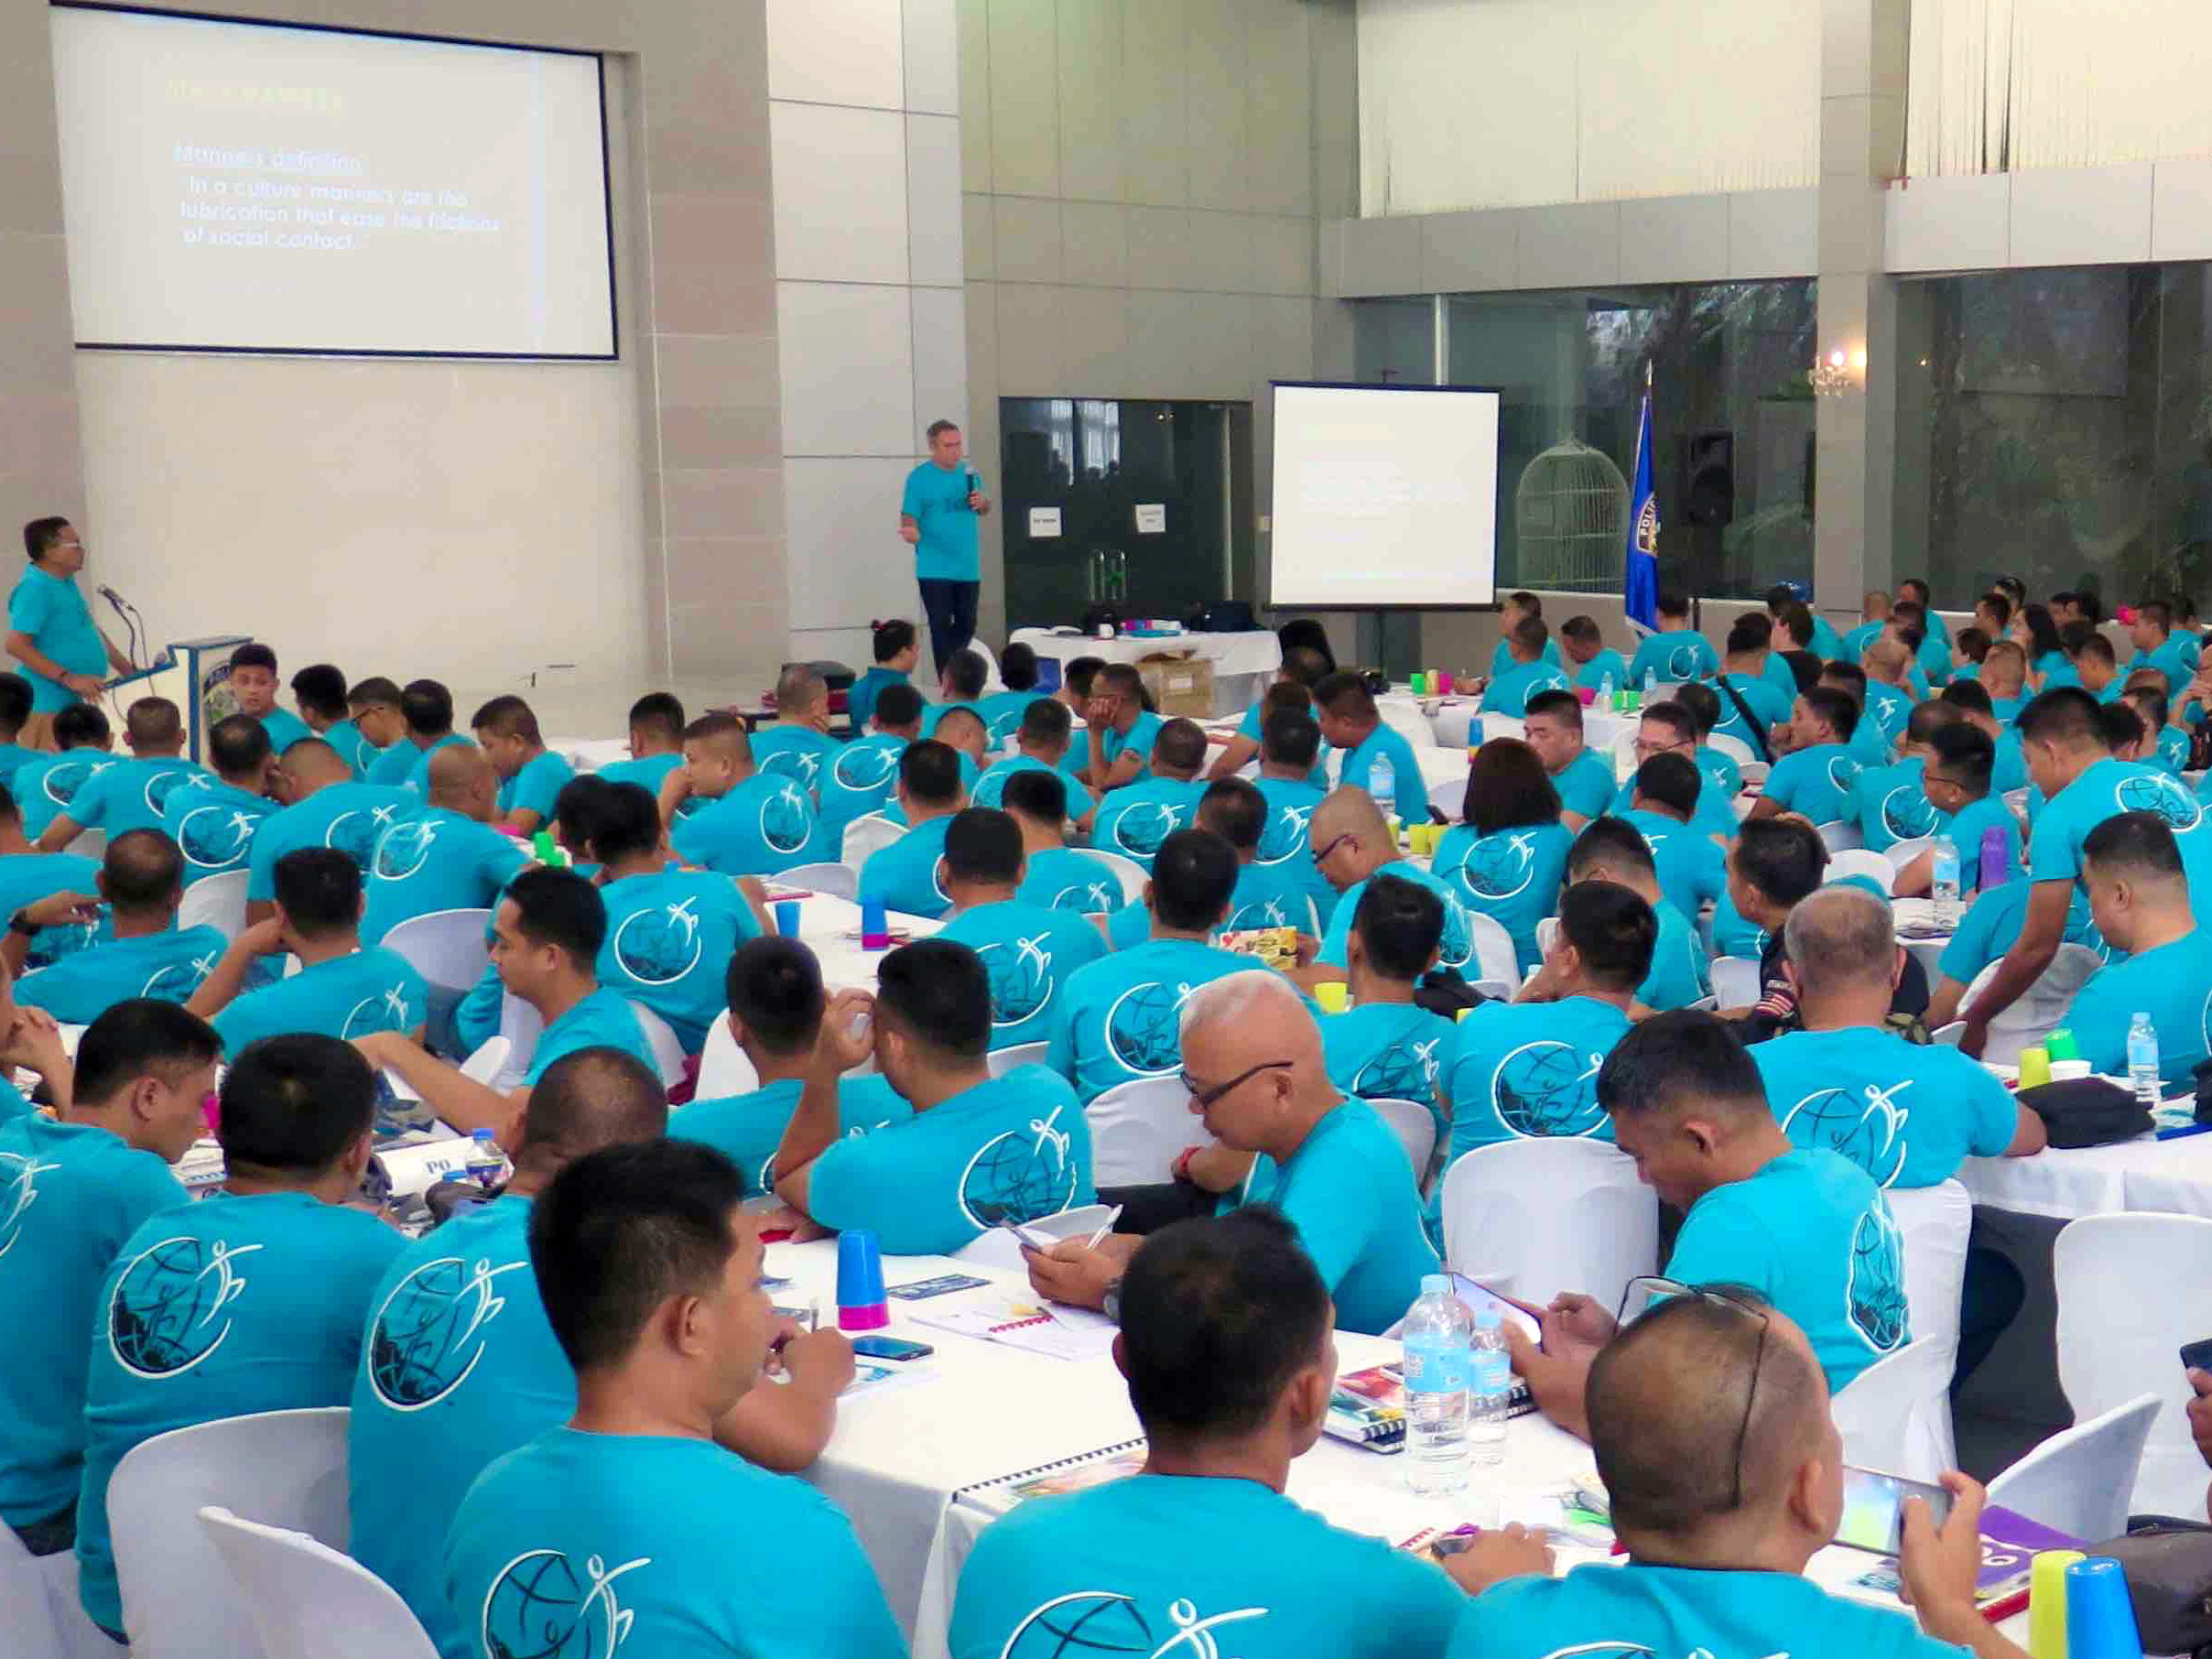 De Foundation for a Drug-Free World traint agenten van de Filipijnse drugsbestrijdings­organisatie in het Feiten over Drugs-programma.